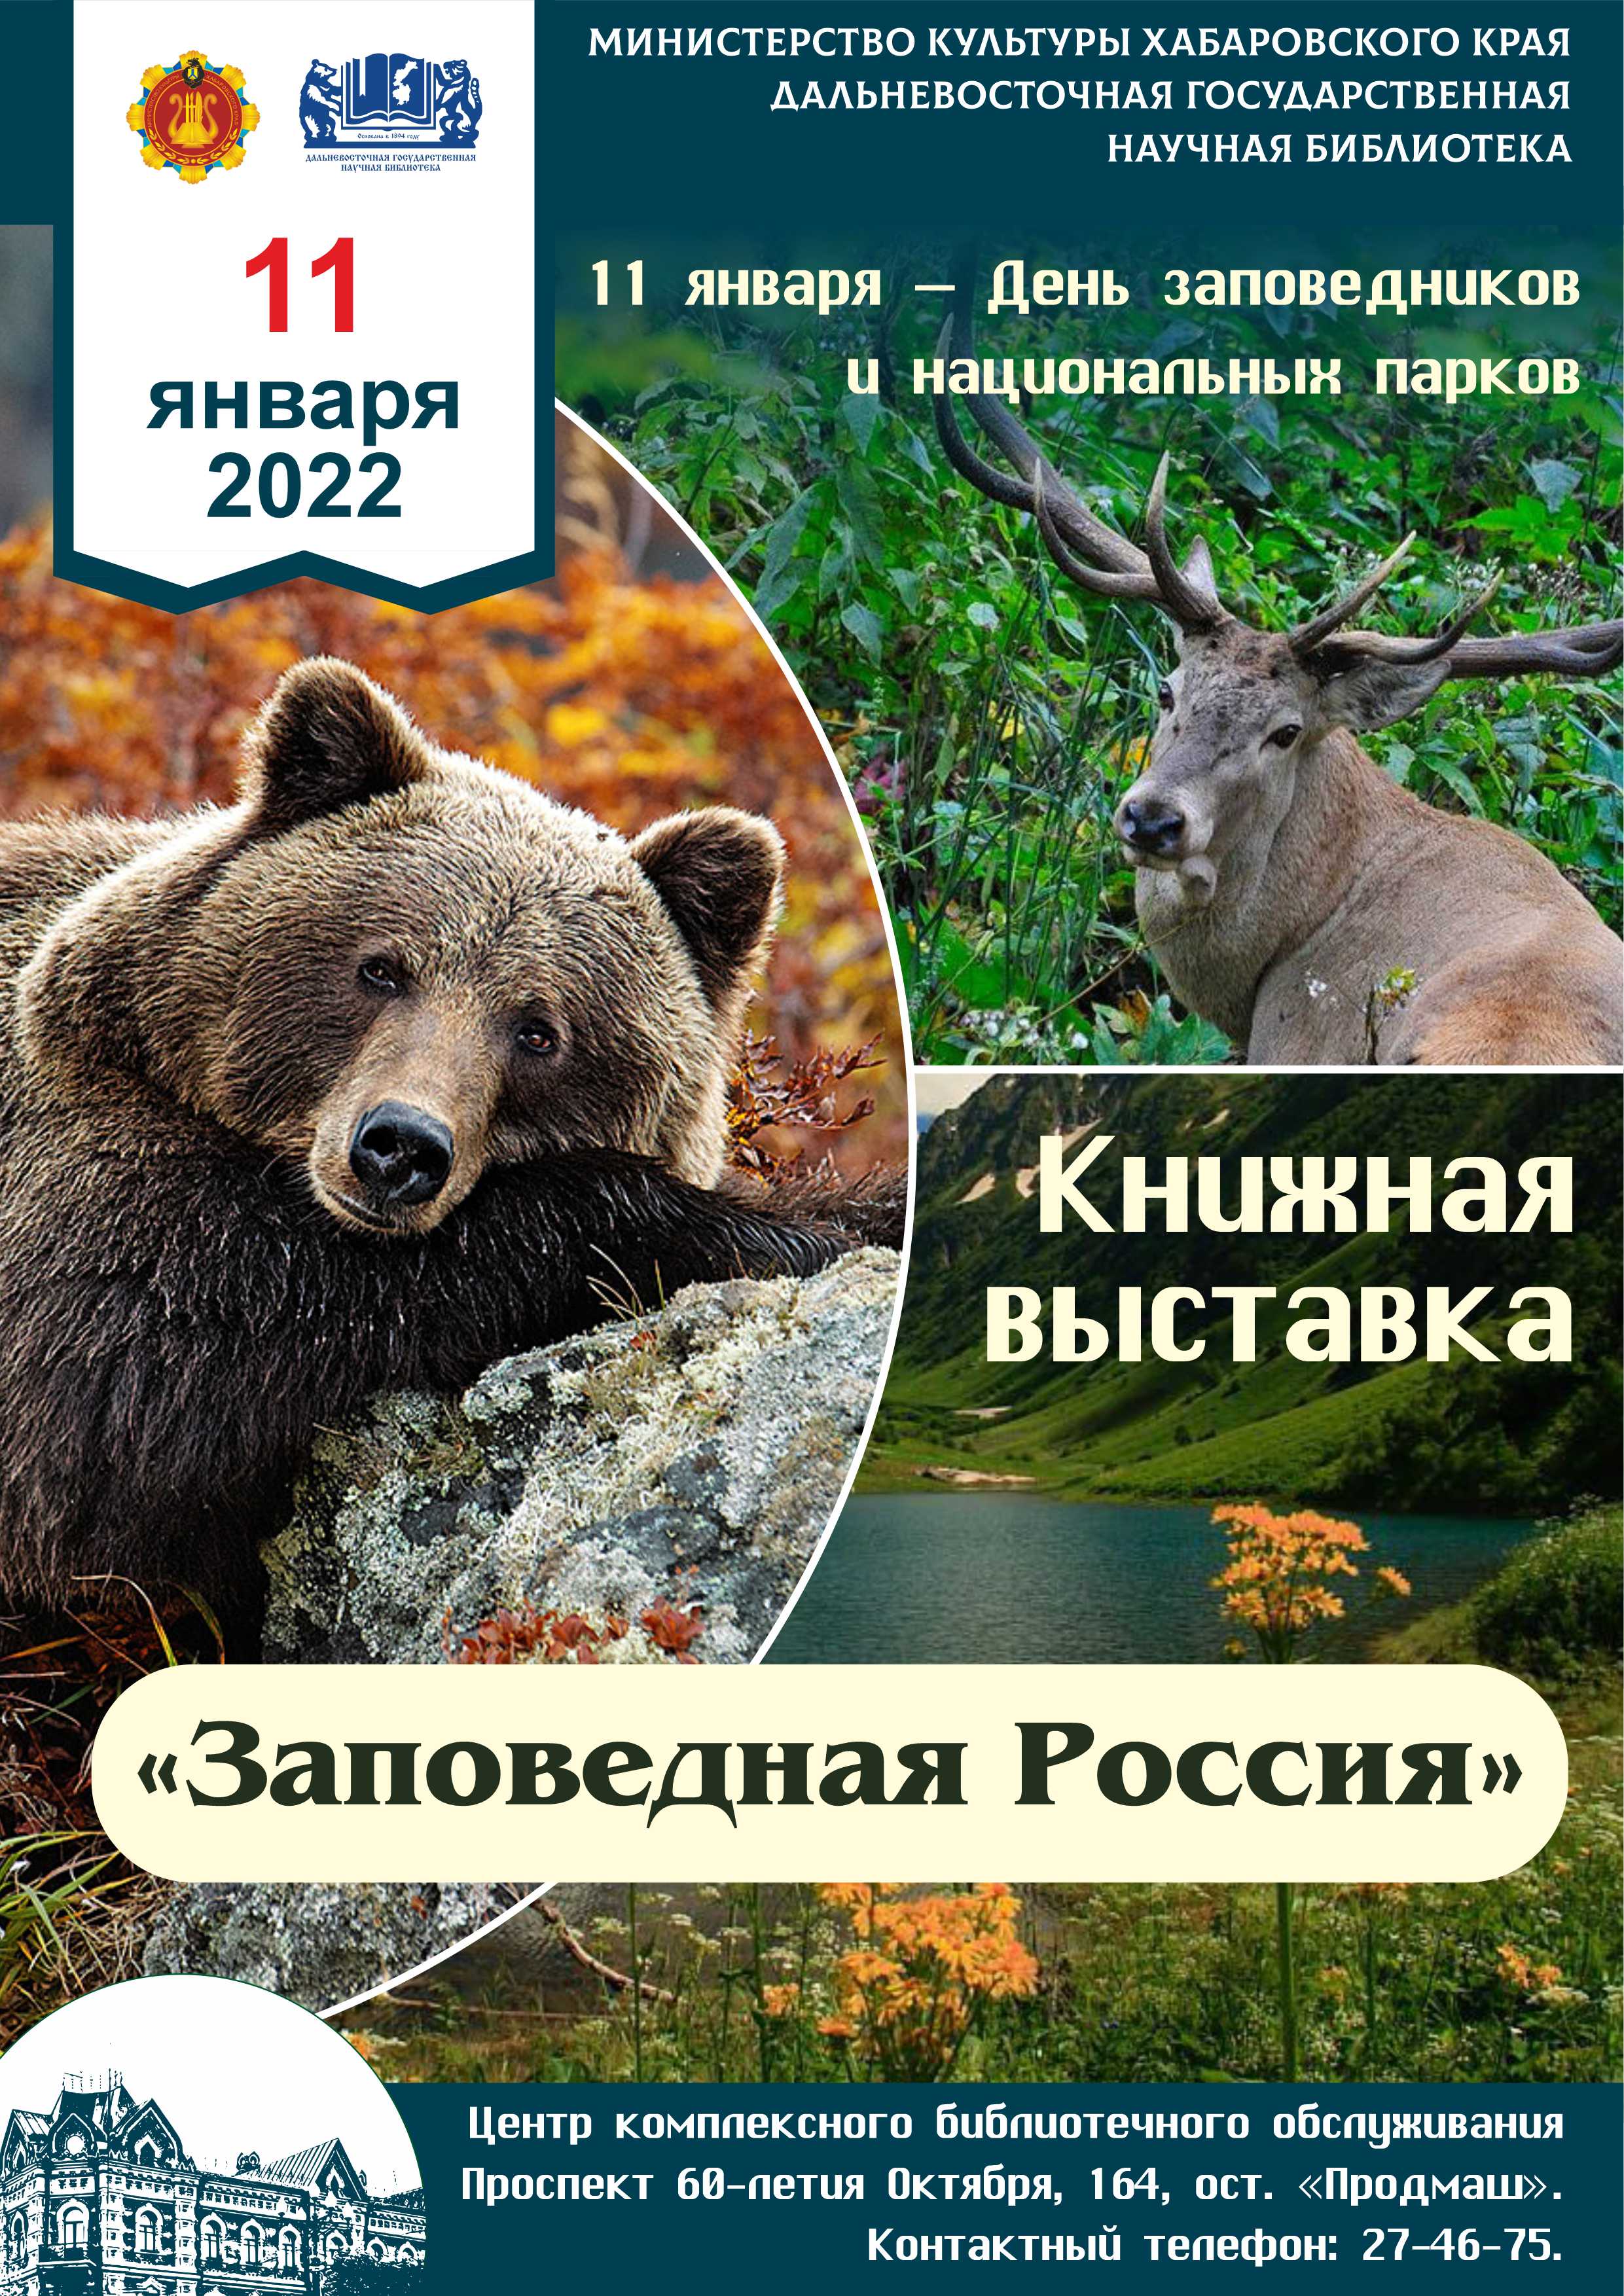 Книжная выставка «Заповедная Россия», посвящённая Дню заповедников и национальных парков.